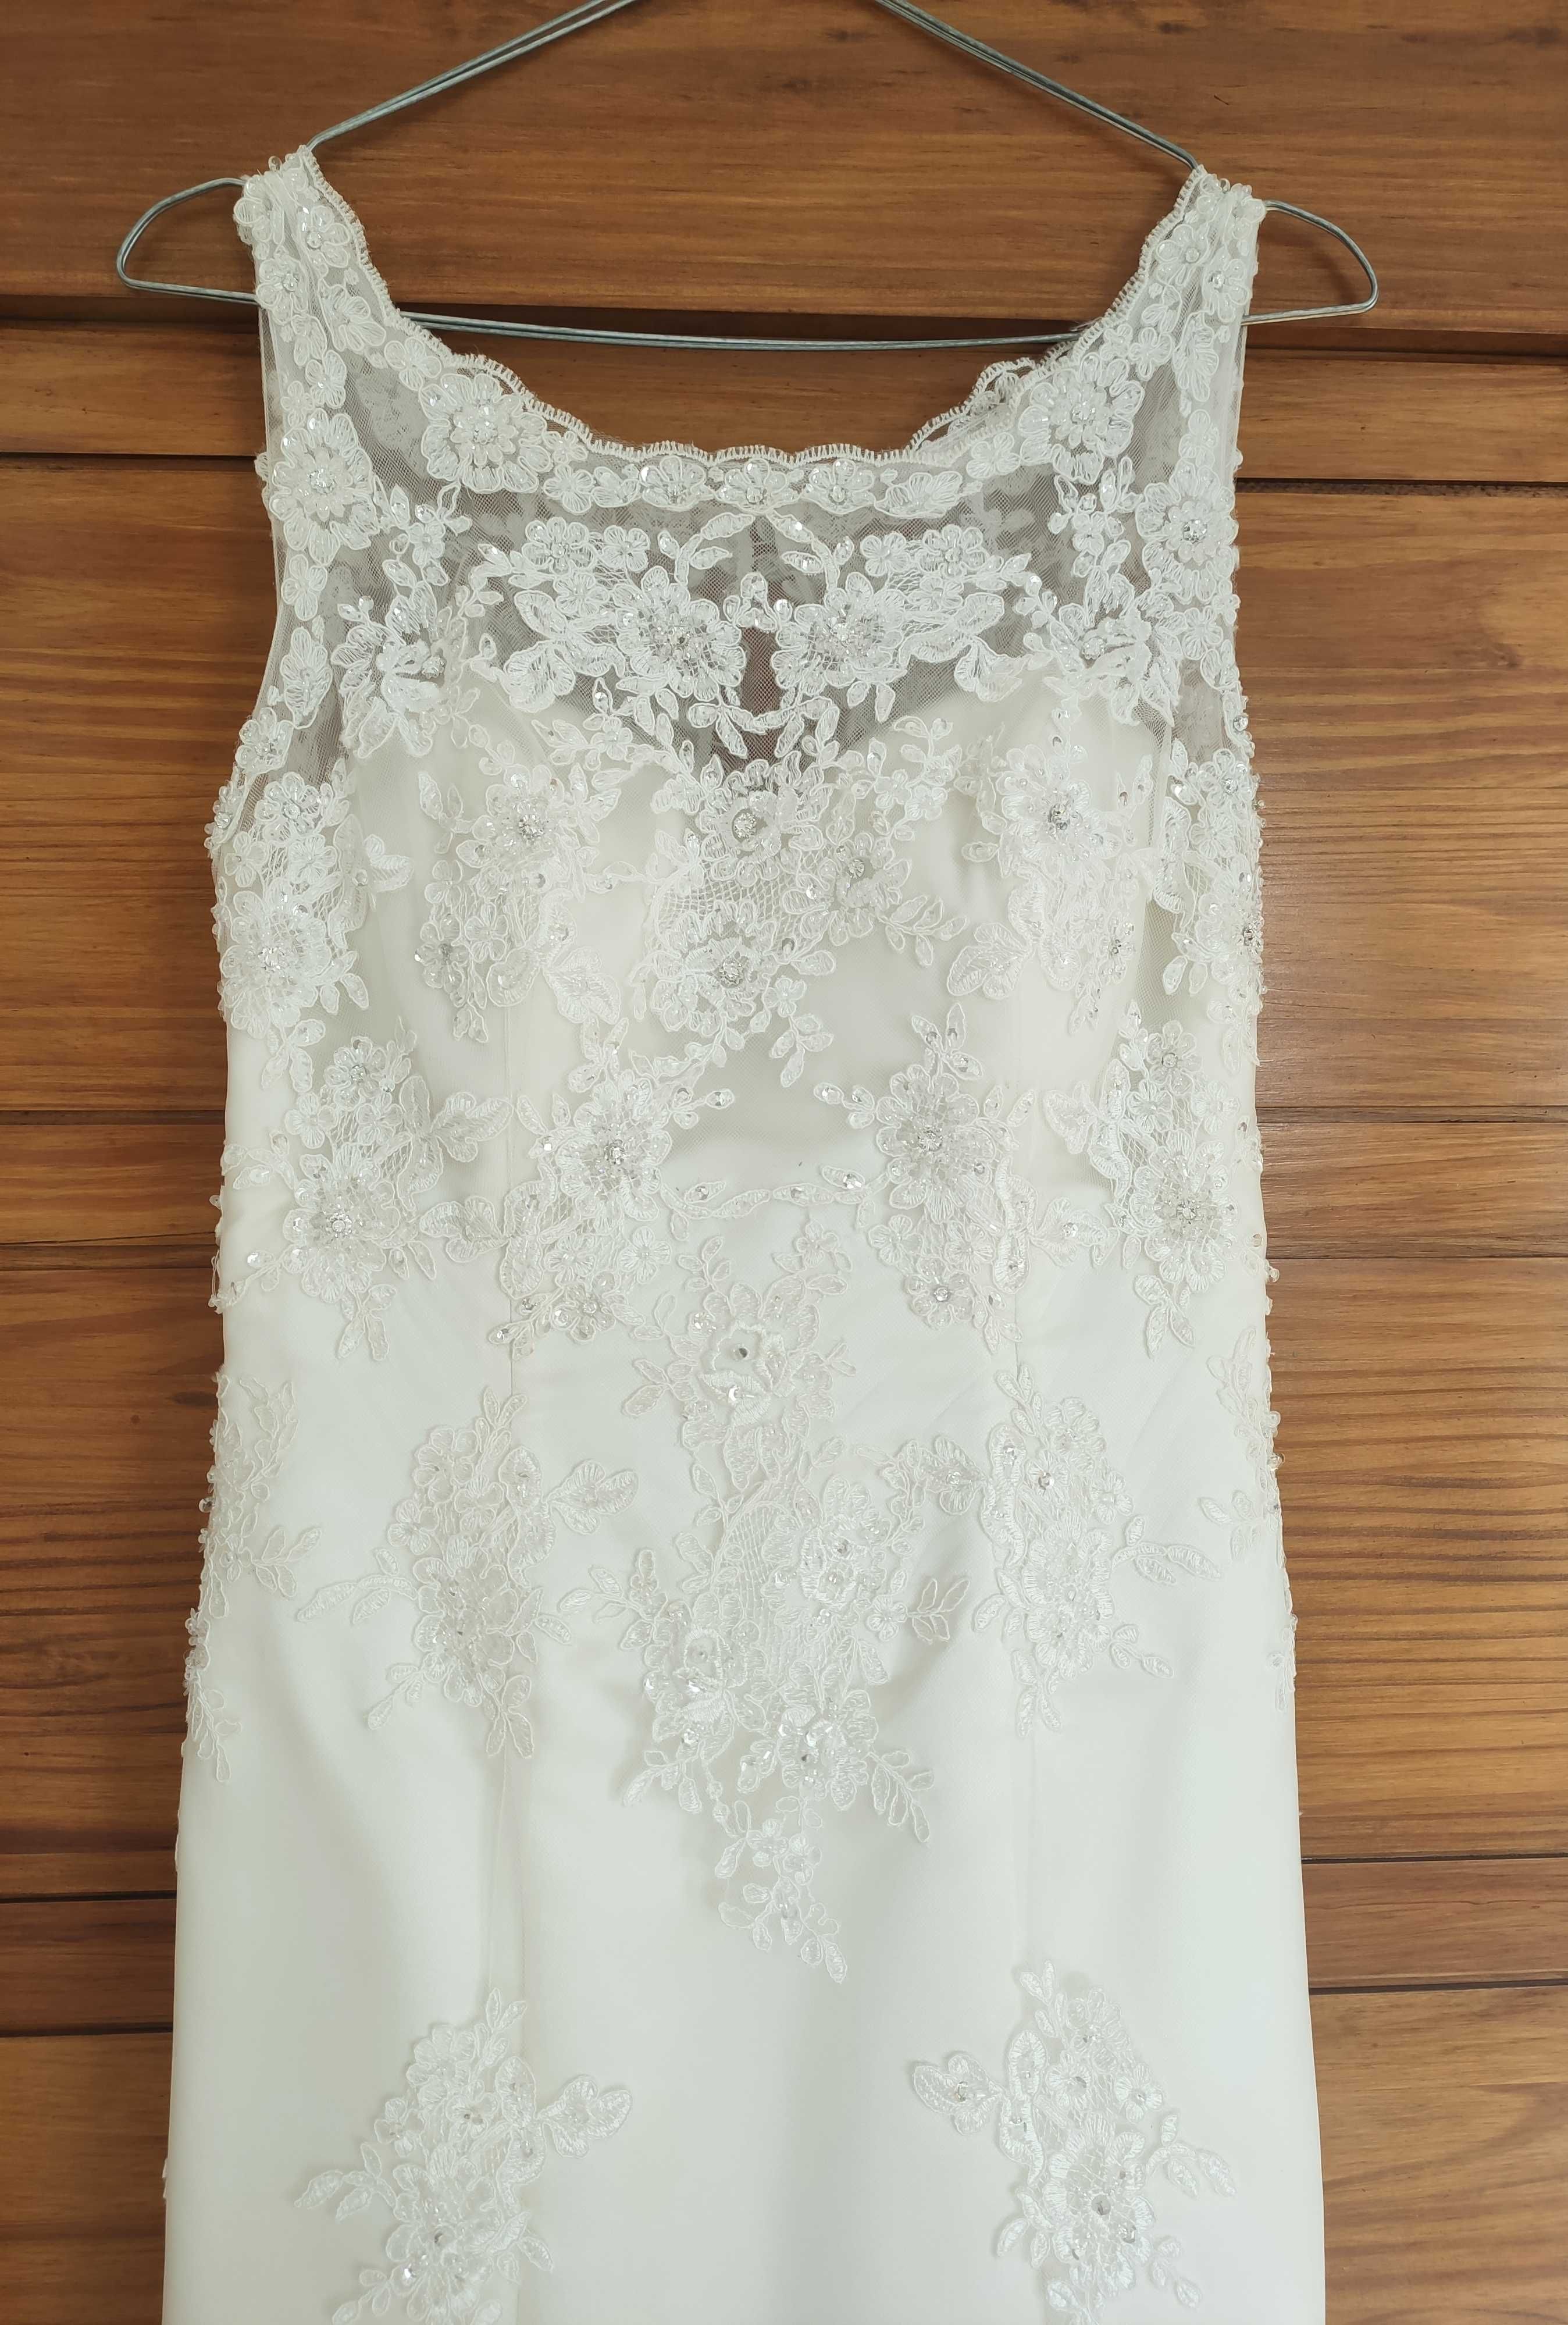 Koronkowa suknia ślubna rozmiar S 160 cm